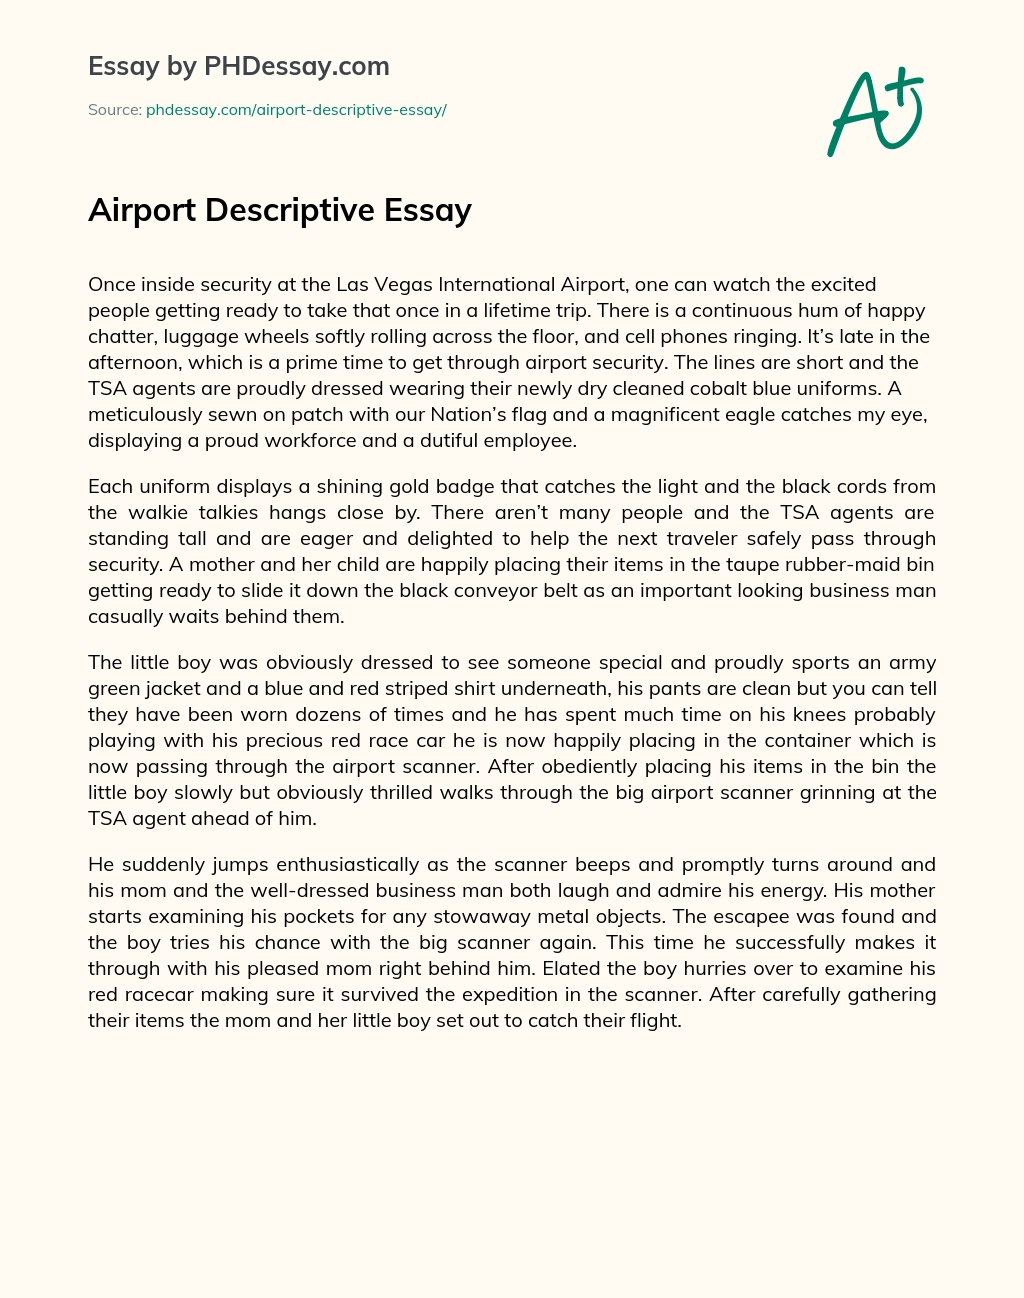 Airport Descriptive Essay essay